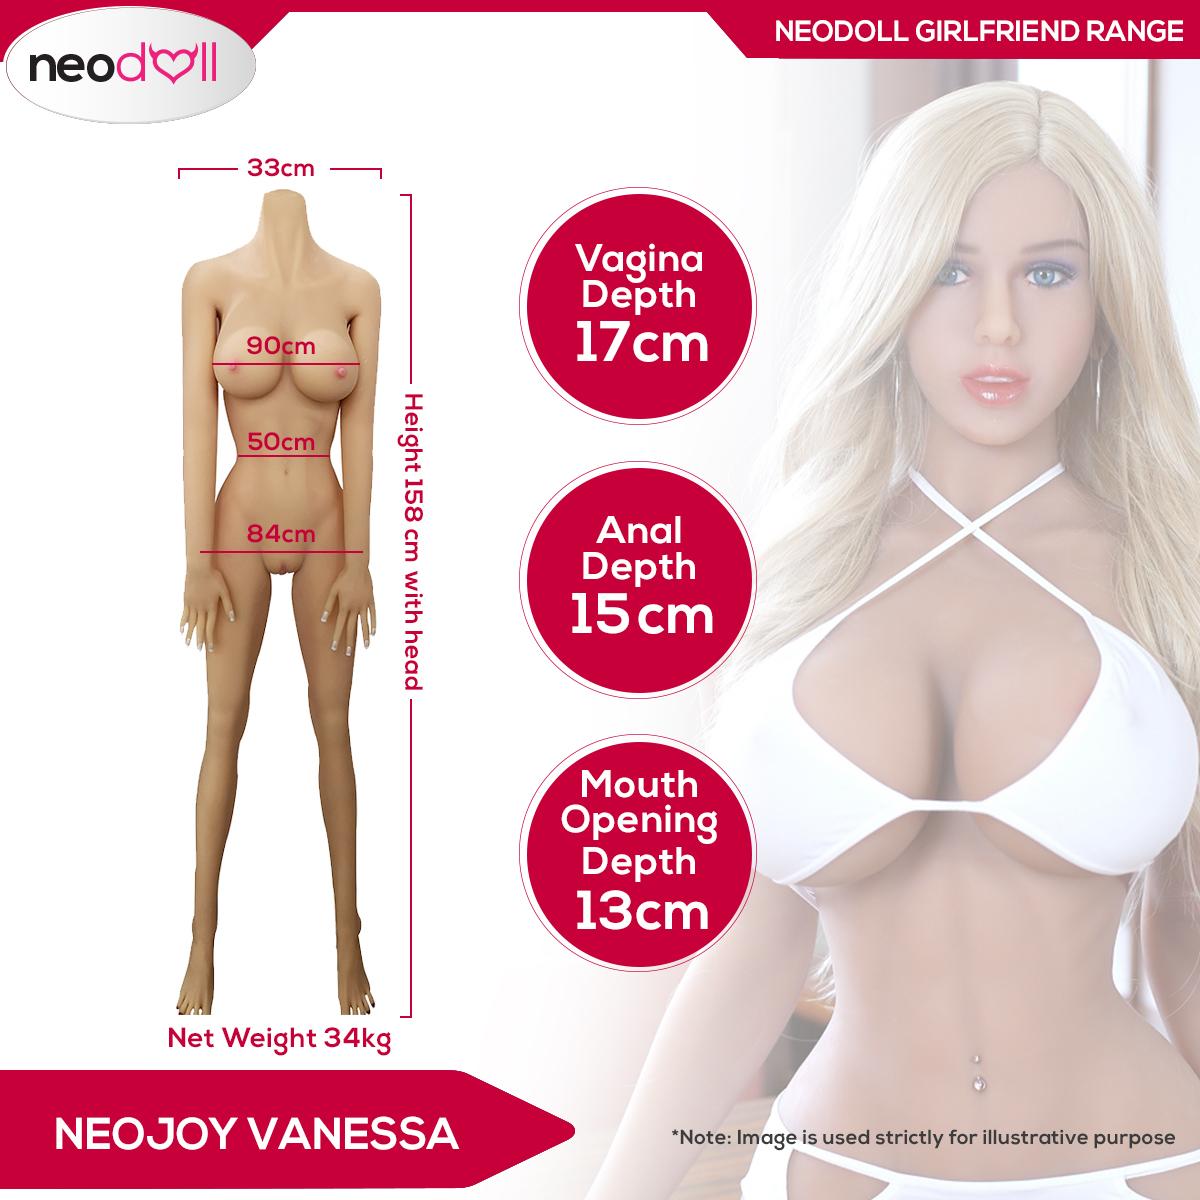 Neodoll Girlfriend Aubrey - Silicone TPE Hybrid Sex Doll -158cm - Tan